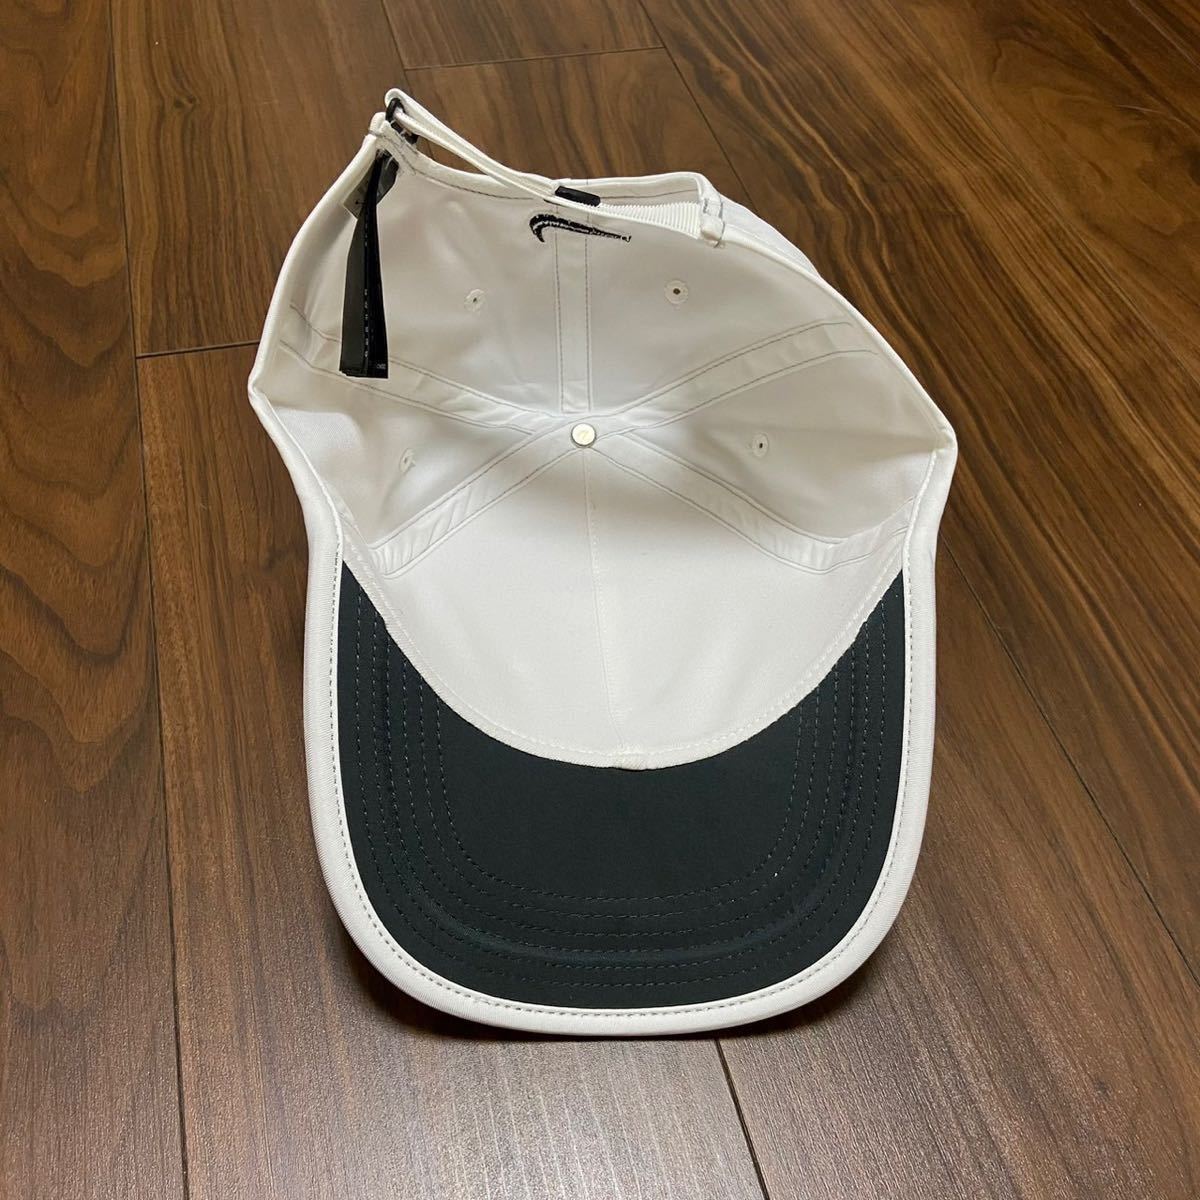  new goods unused NIKE GOLF hat Golf cap Nike white CAP sport white visor white day avoid 